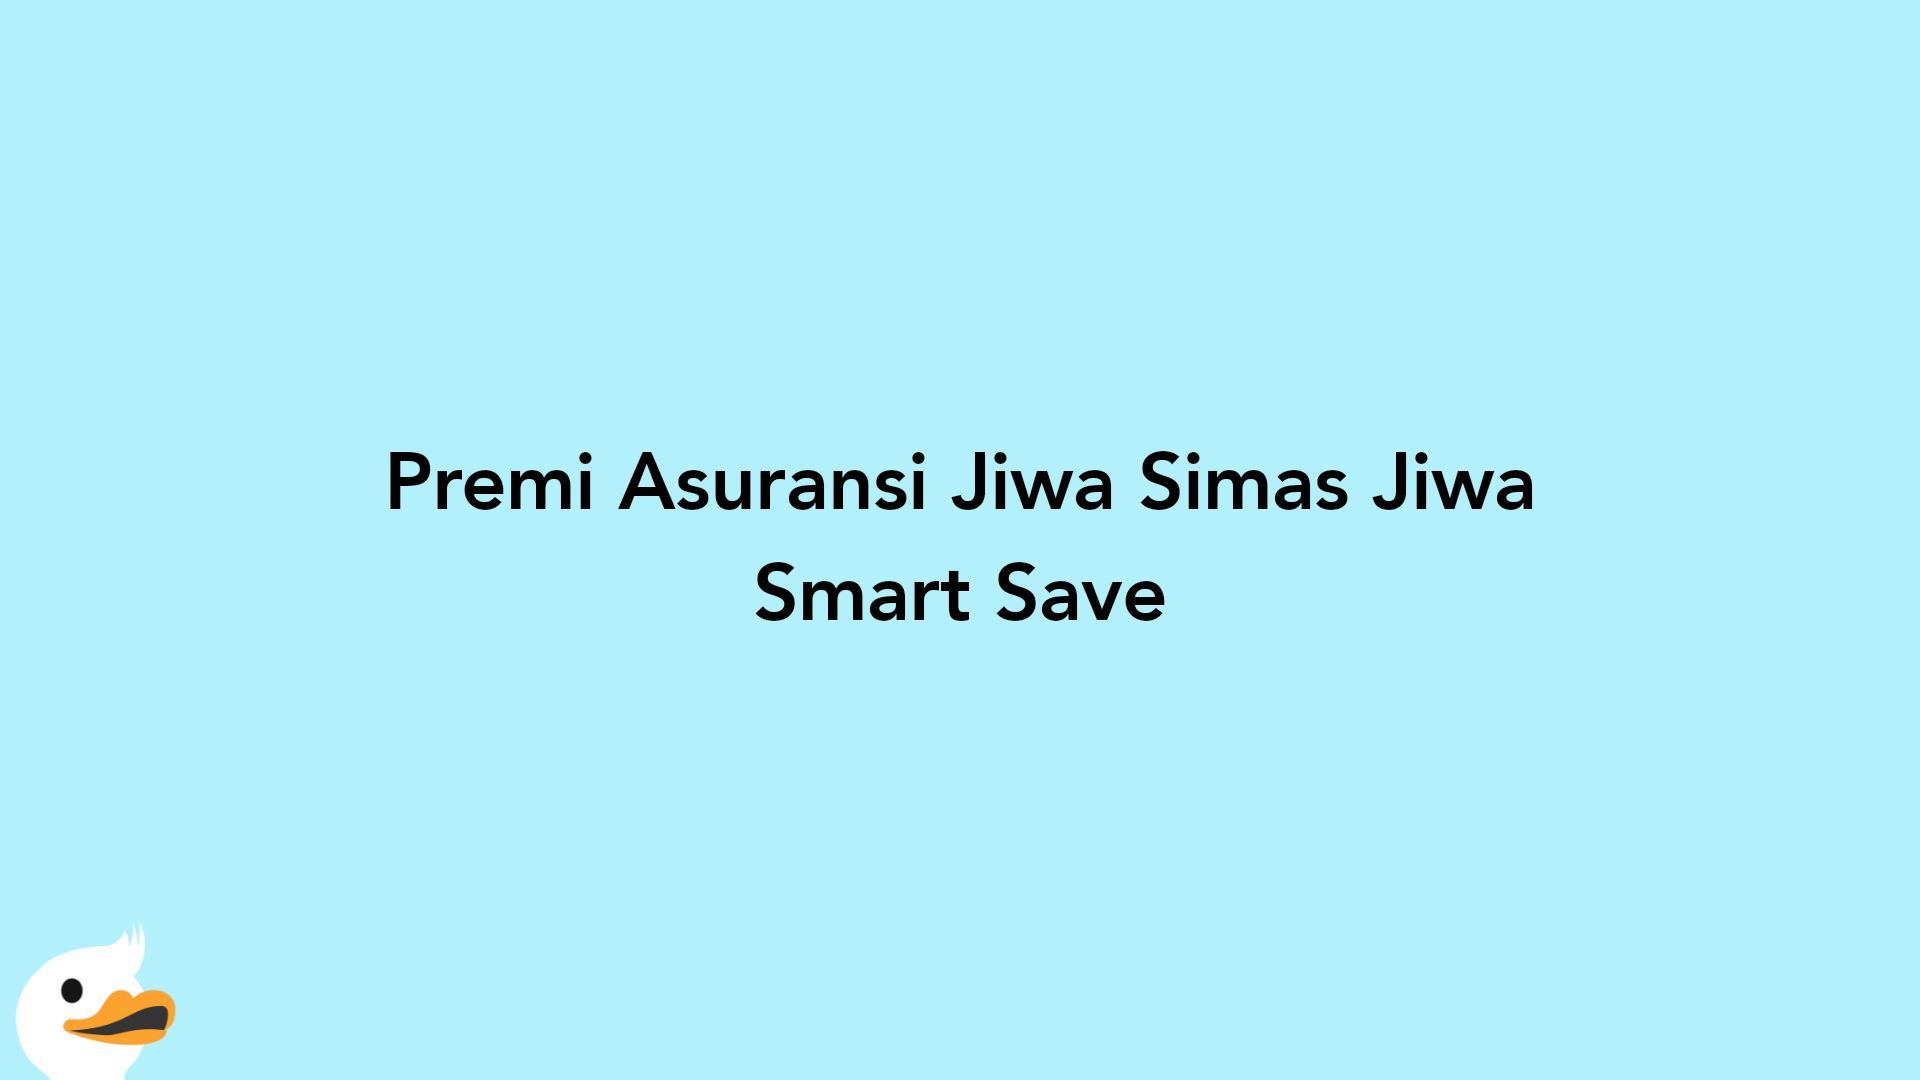 Premi Asuransi Jiwa Simas Jiwa Smart Save